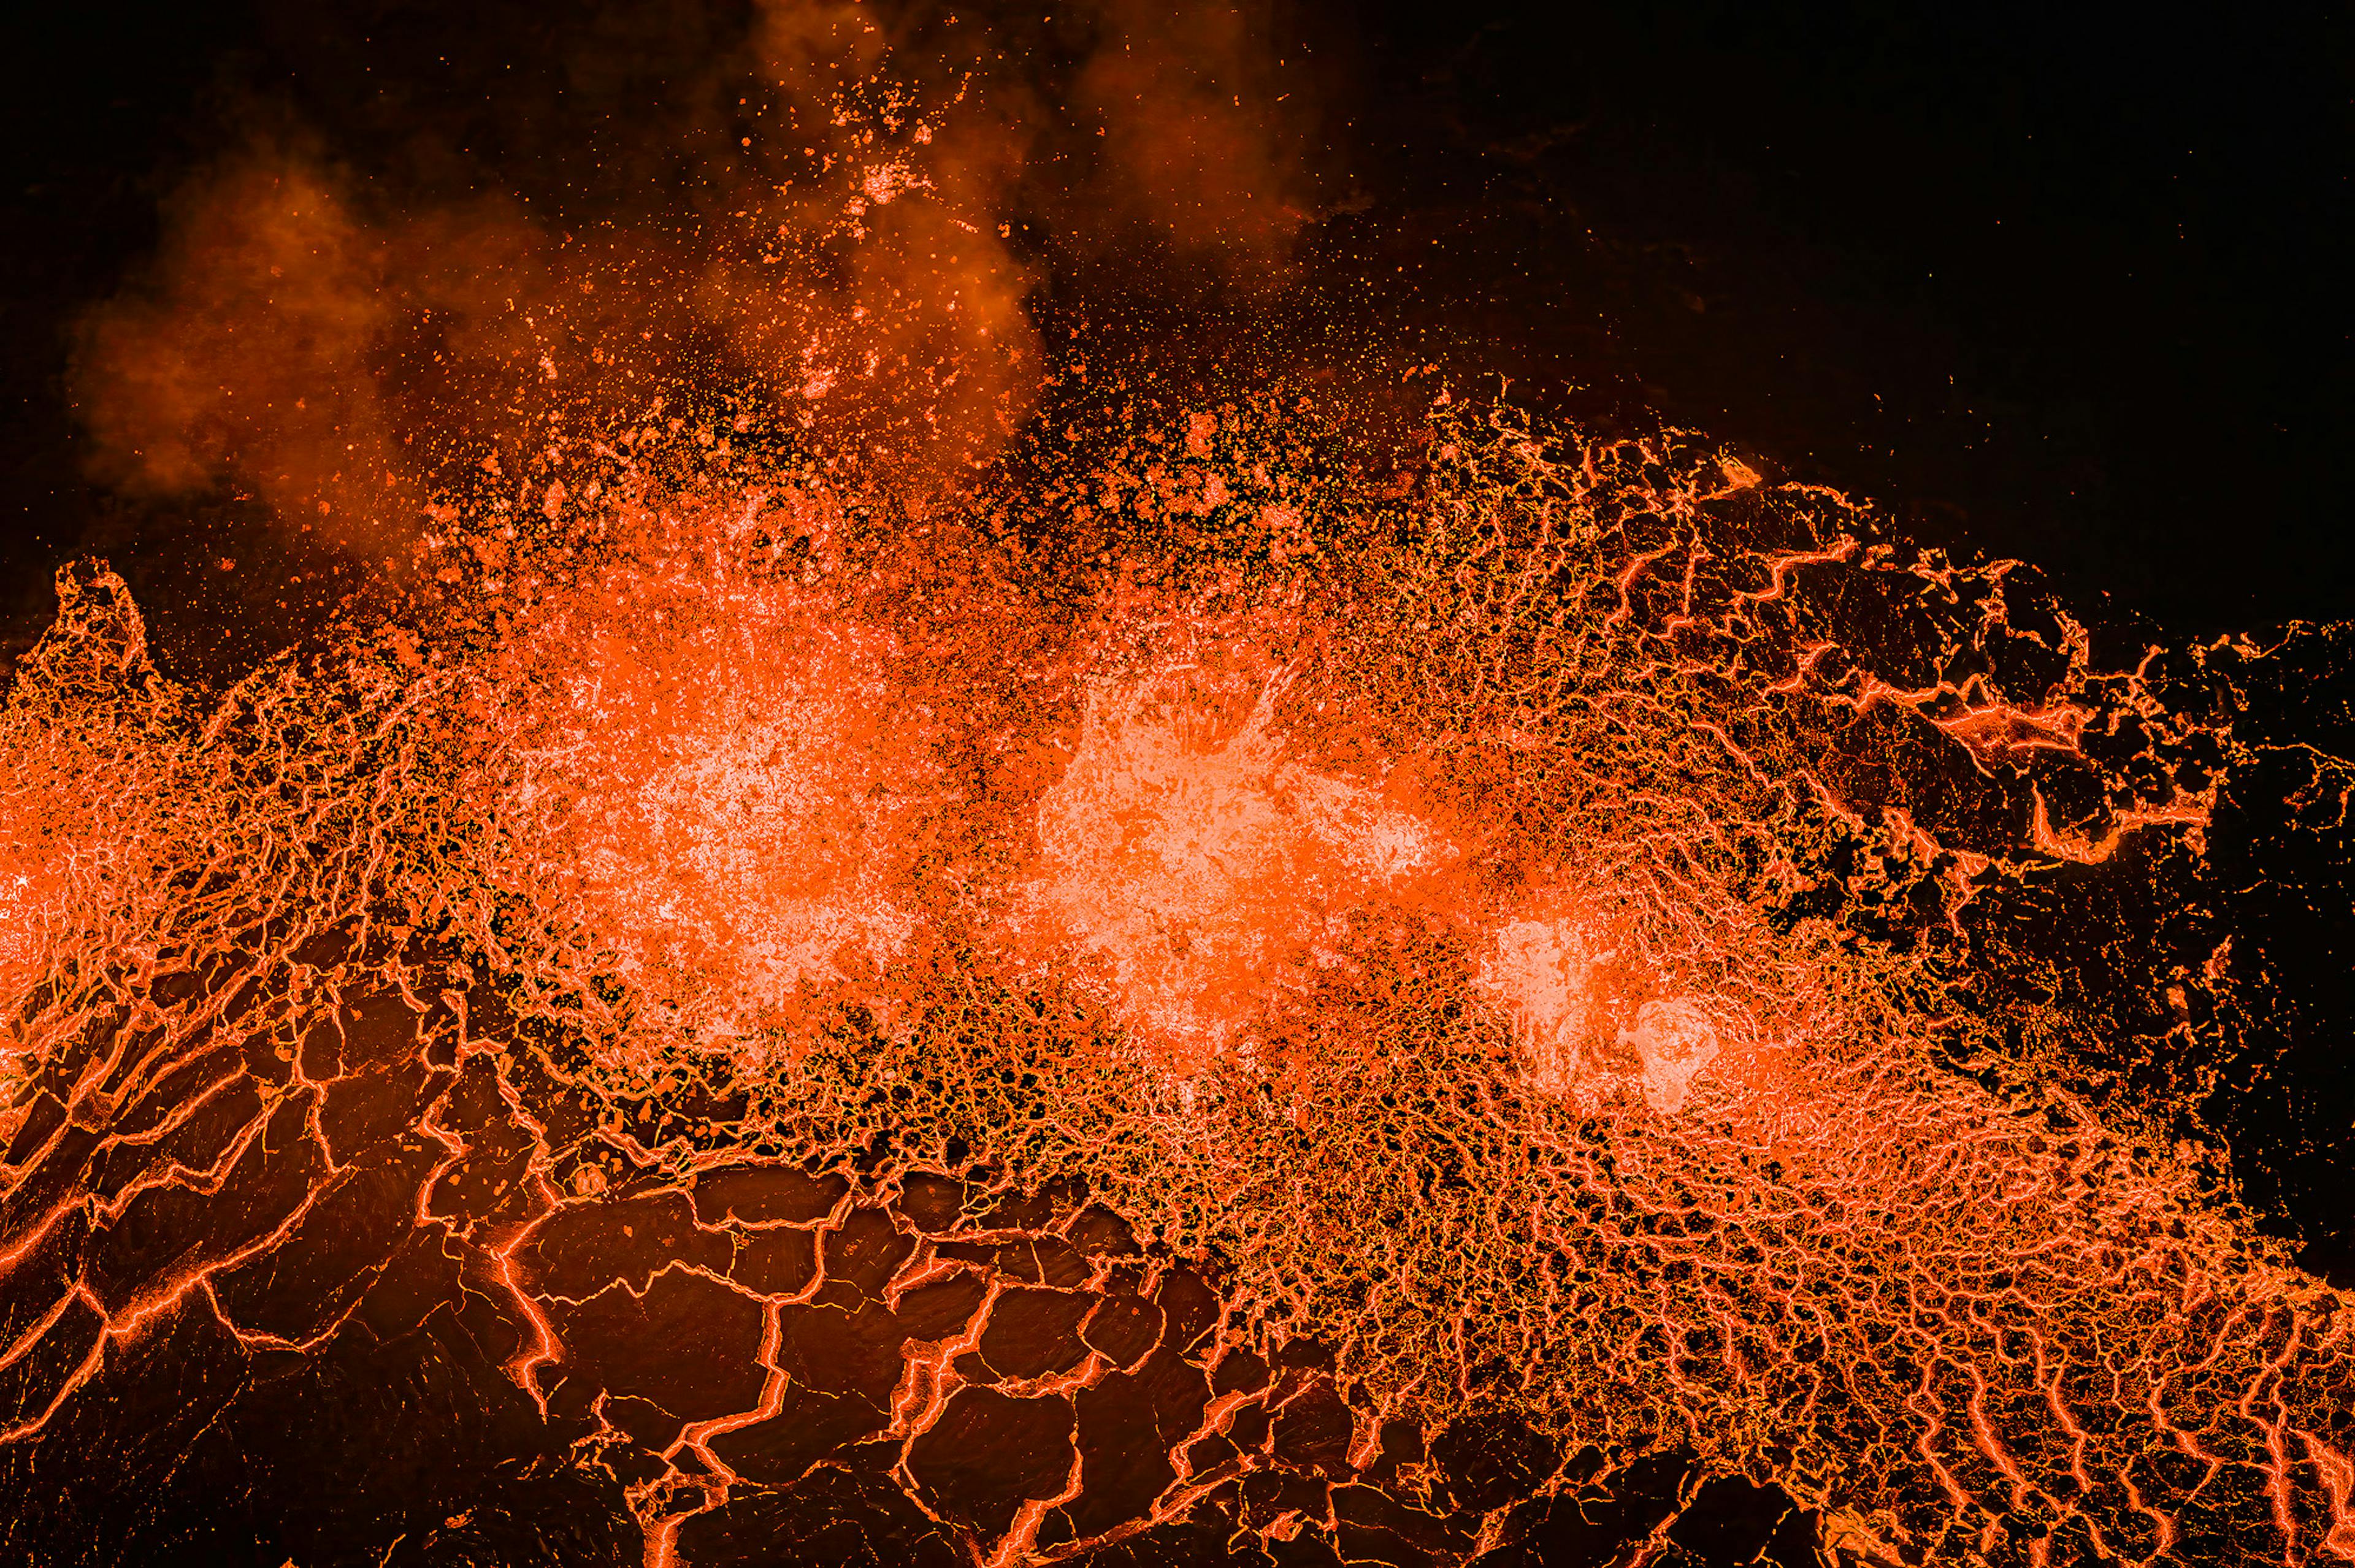 Sundhnukagigaroð Crater Row Eruption